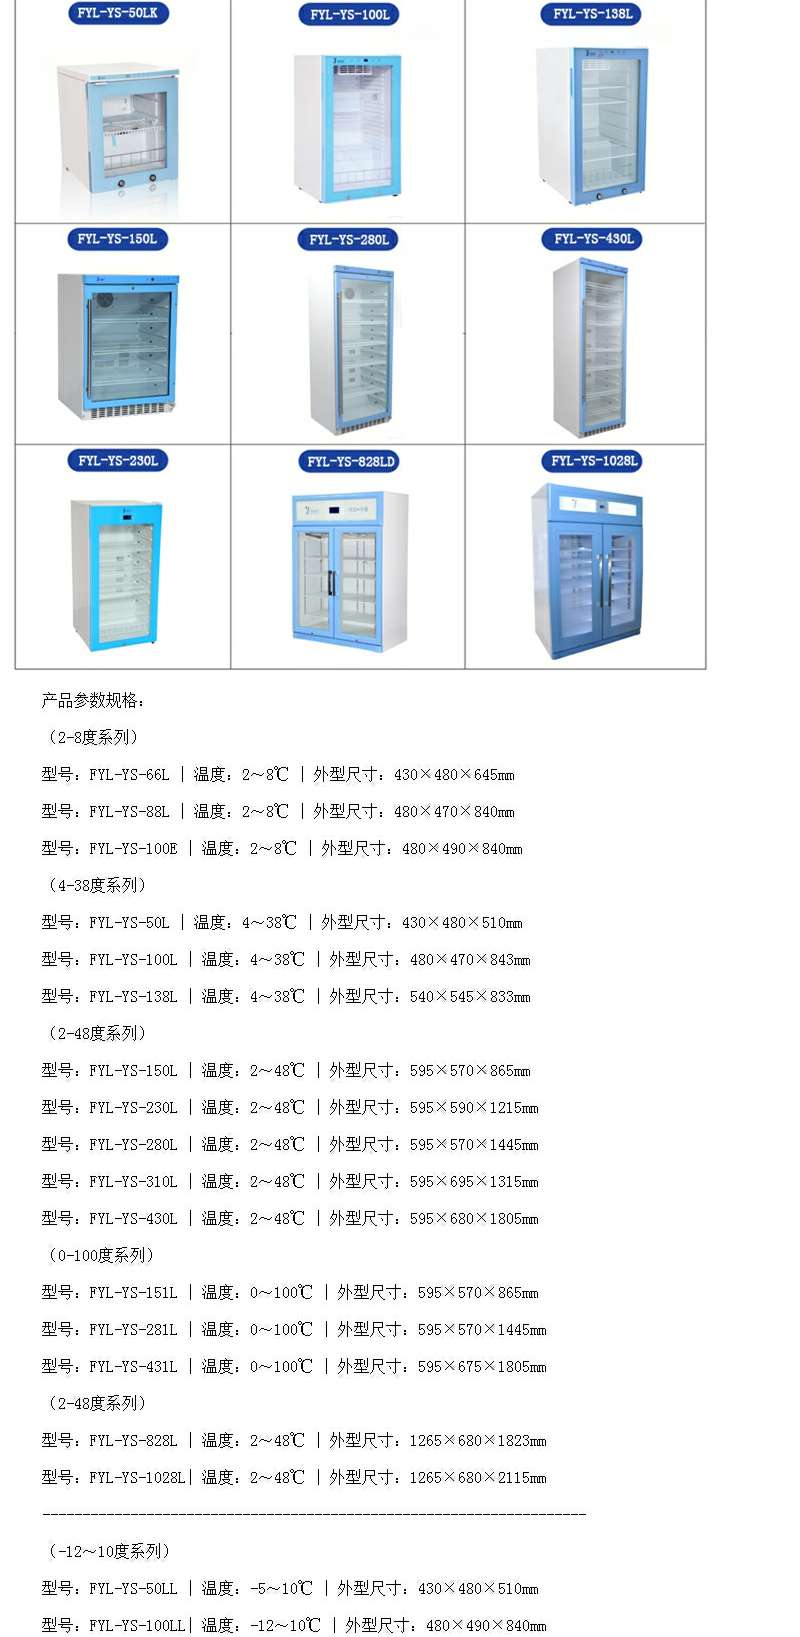 2-30度避光保存药品恒温箱（药品冰箱）FYL-YS-50LK